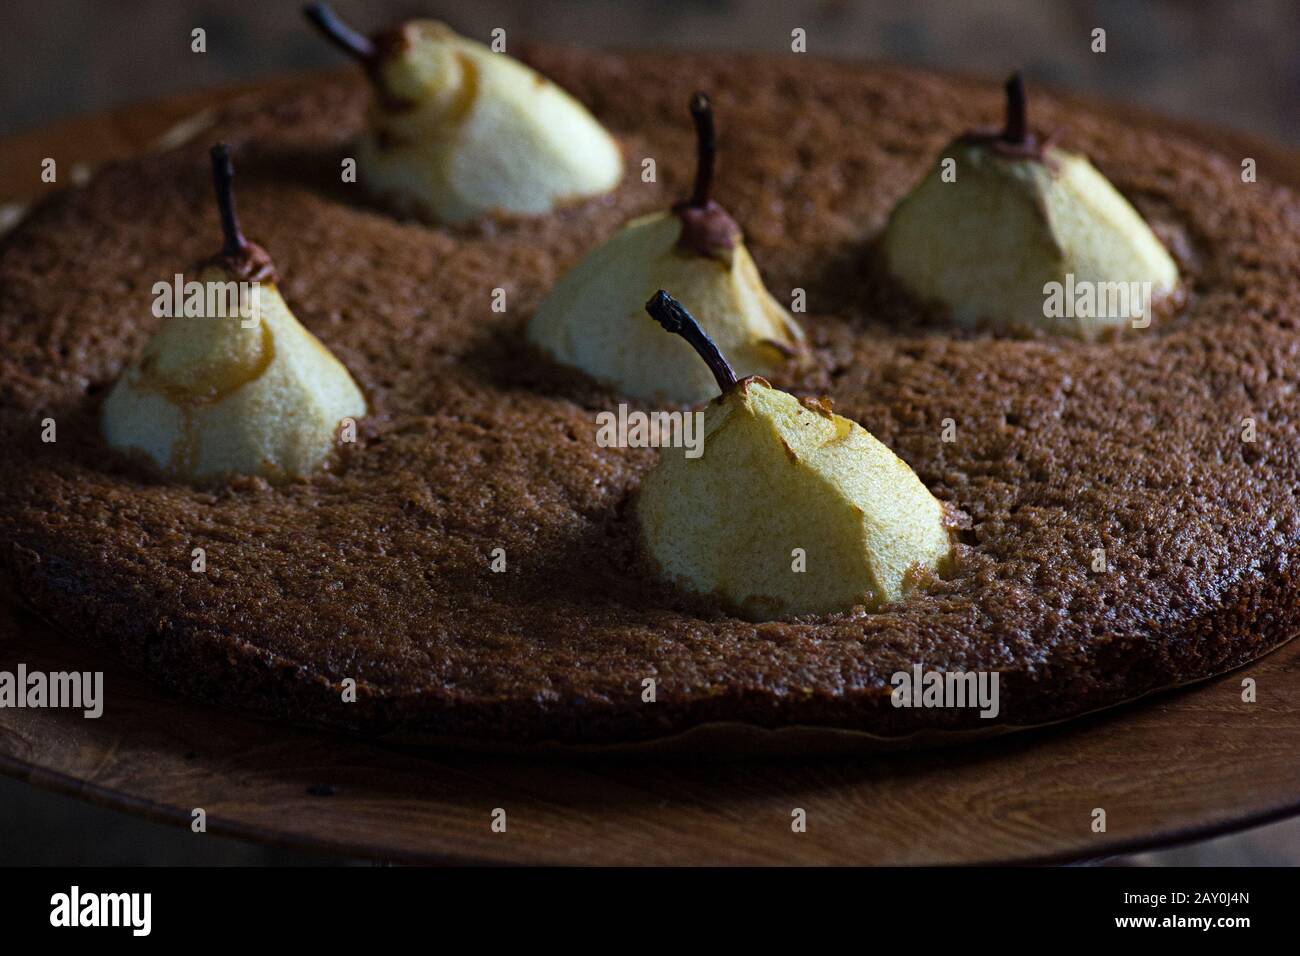 Primo piano di una torta al cioccolato con pere Foto Stock